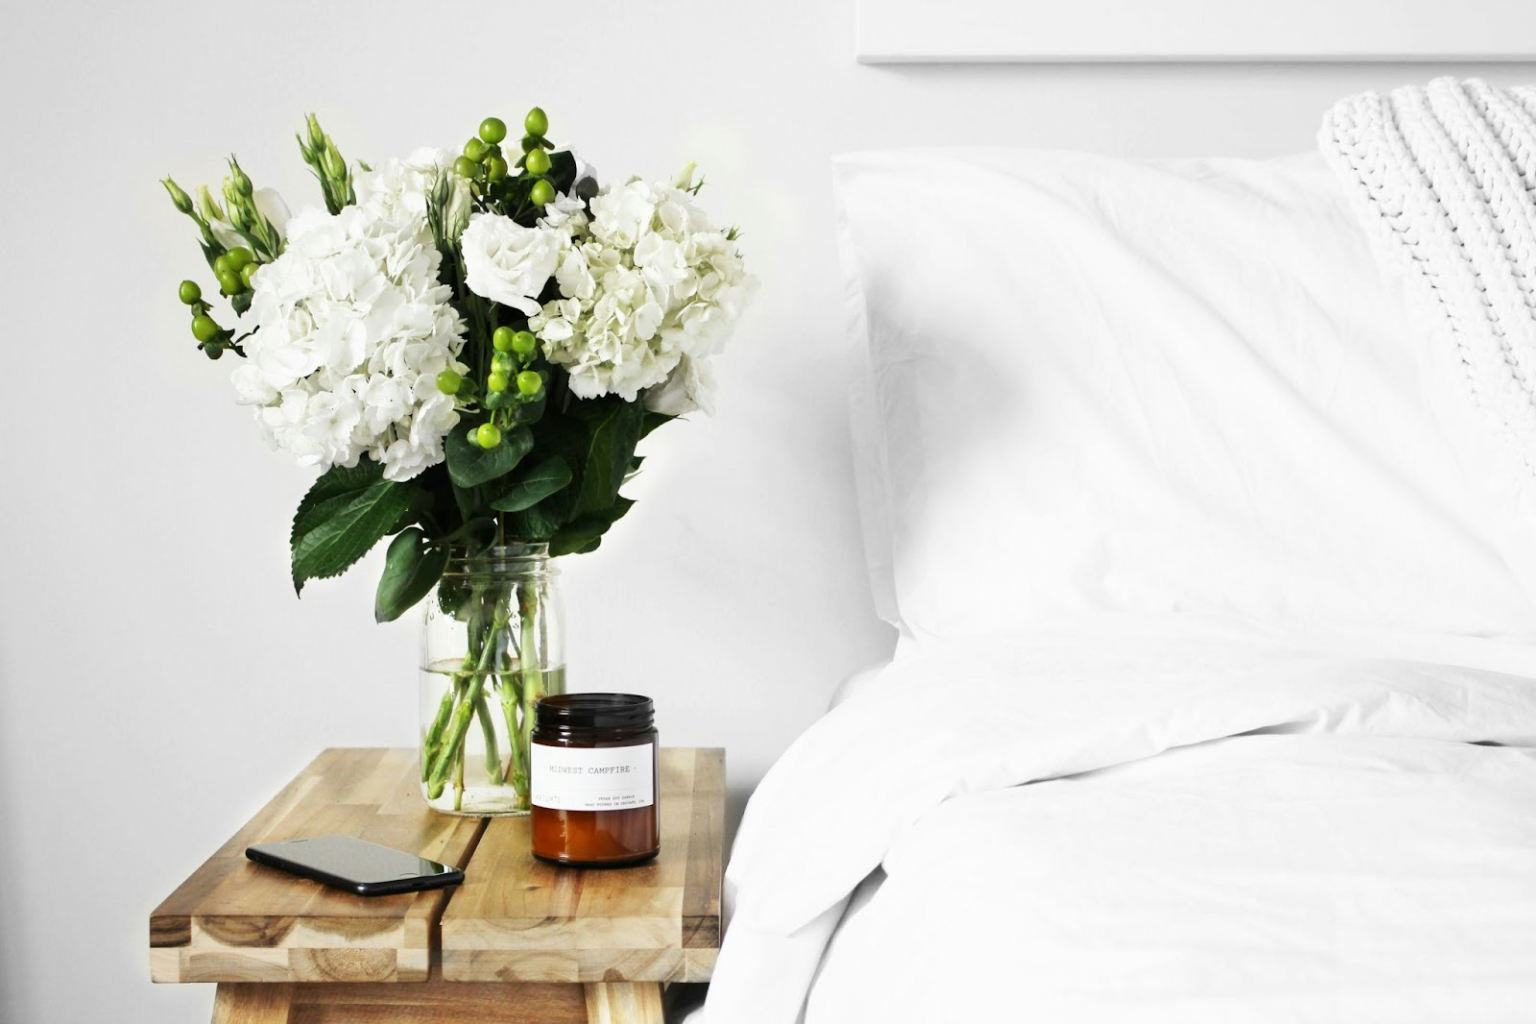 fehér ágyneművel vetett ágy, mellett fehér virágok